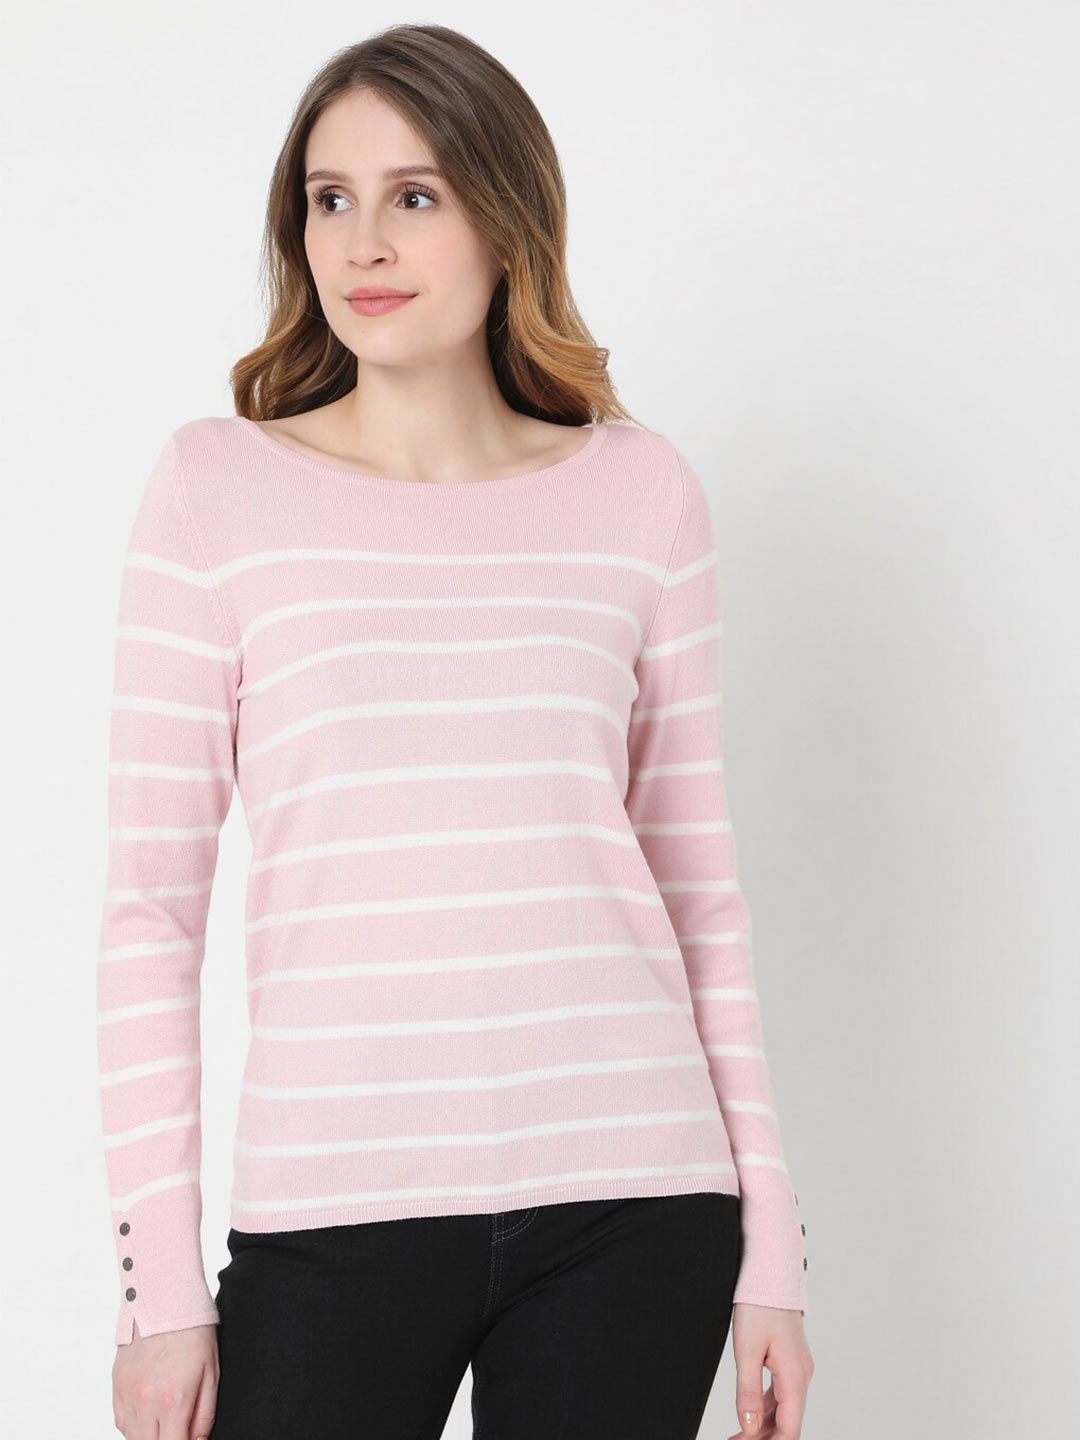 Vero Moda Women Pink & White Striped Pullover Price in India